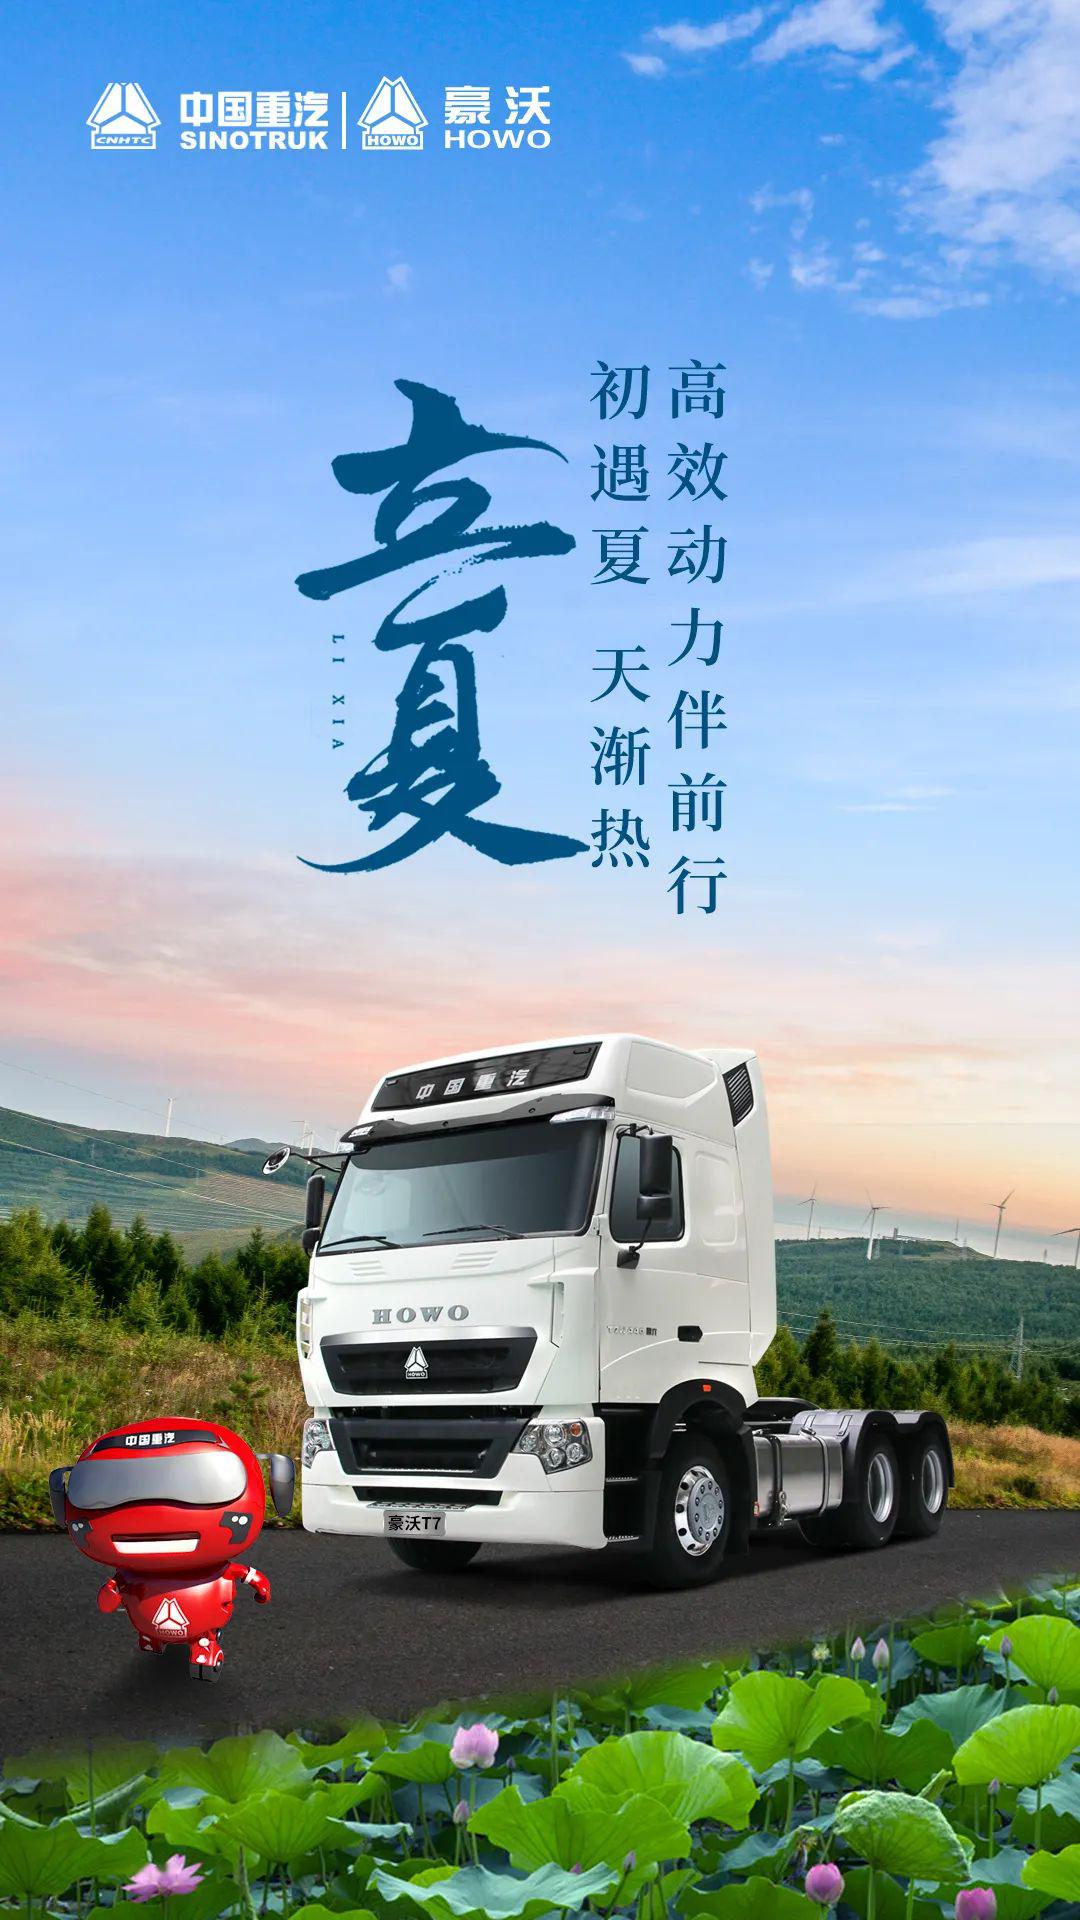 中国重汽2015广告图片